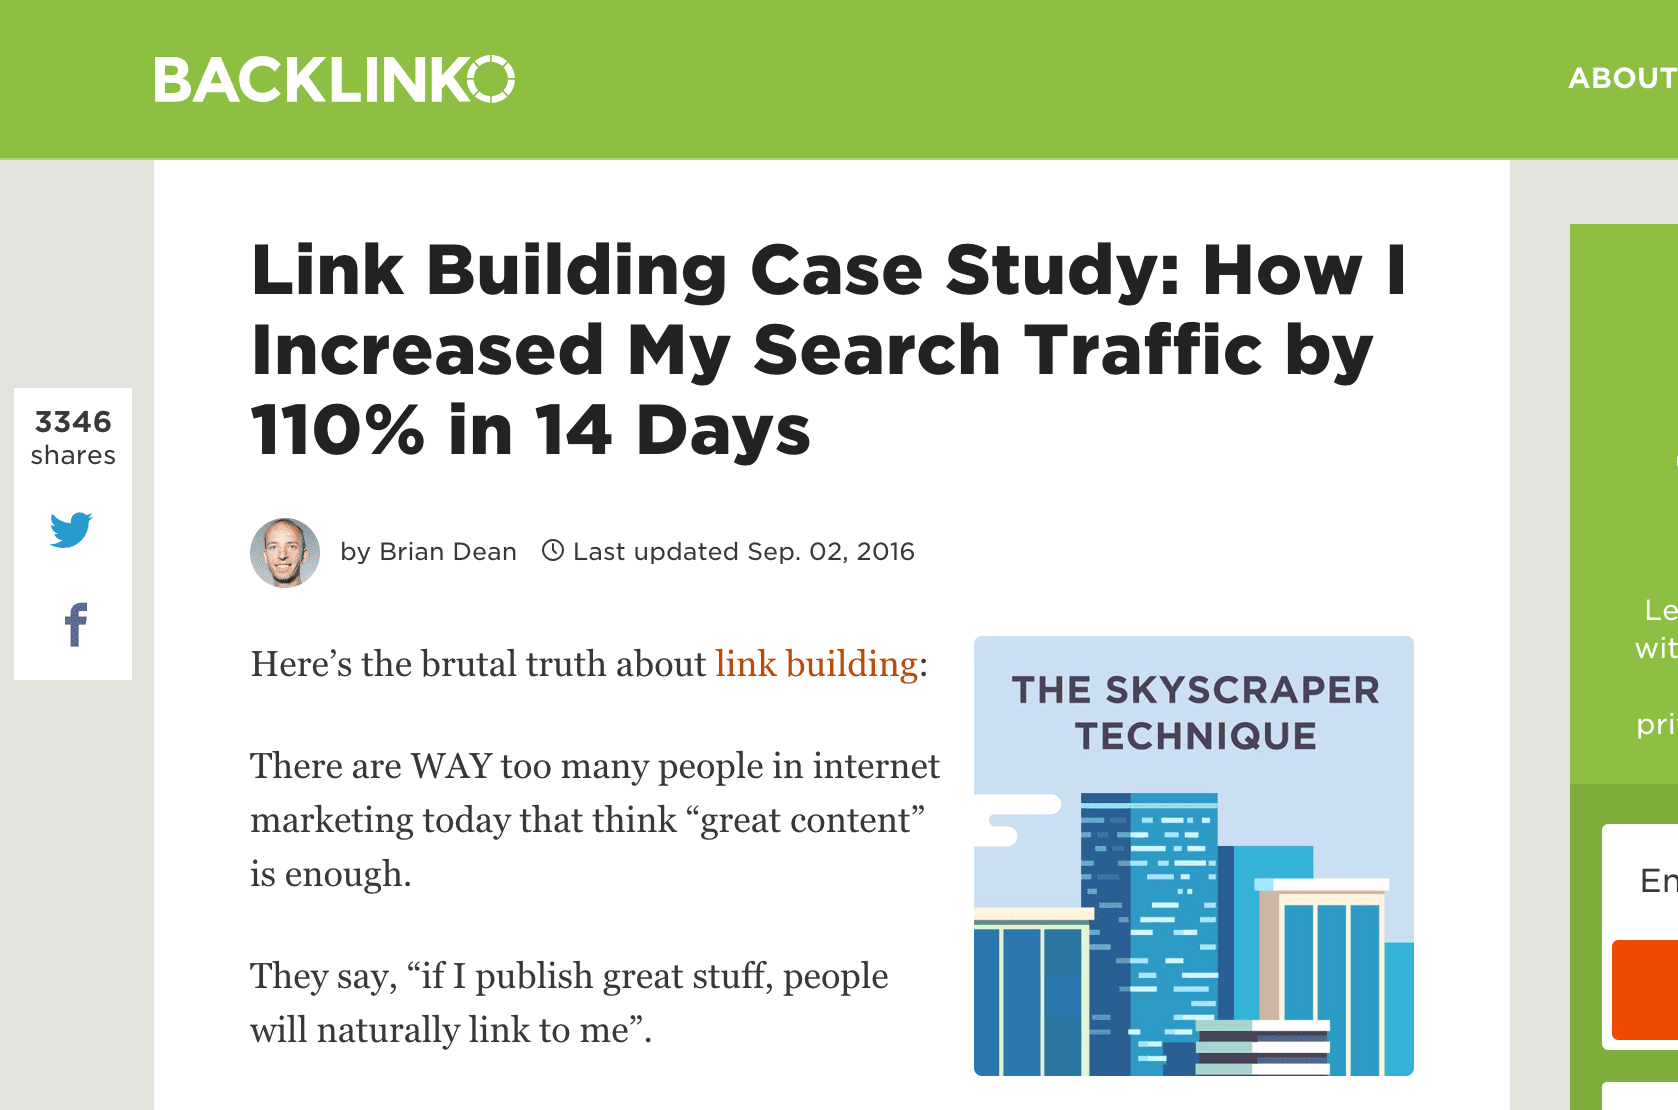 Il y a quelque temps, Brian Dean a publié un article intitulé: Étude de cas sur la construction de liens: Comment j'ai augmenté mon trafic de recherche de 110% en 14 jours .